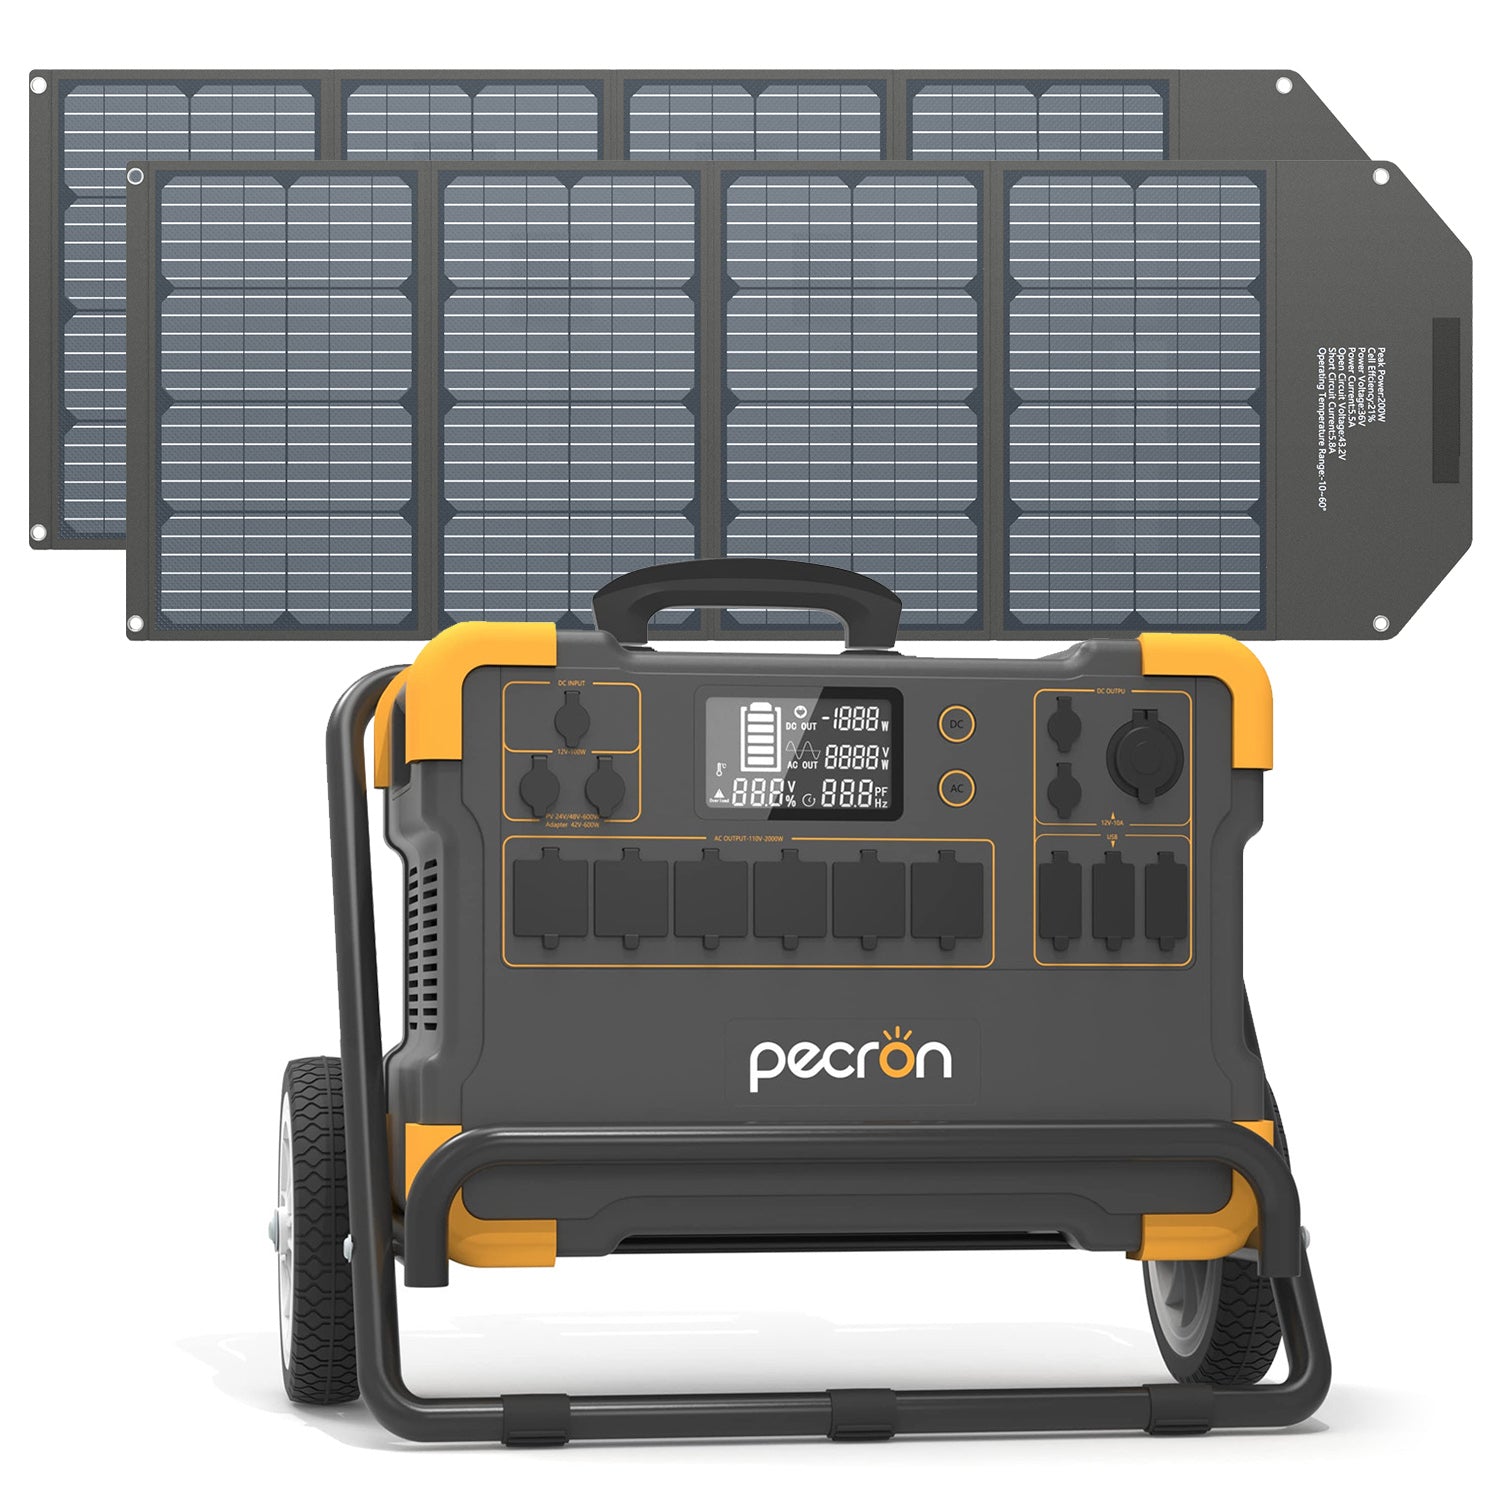 PECRON E3000 Solar System Kit